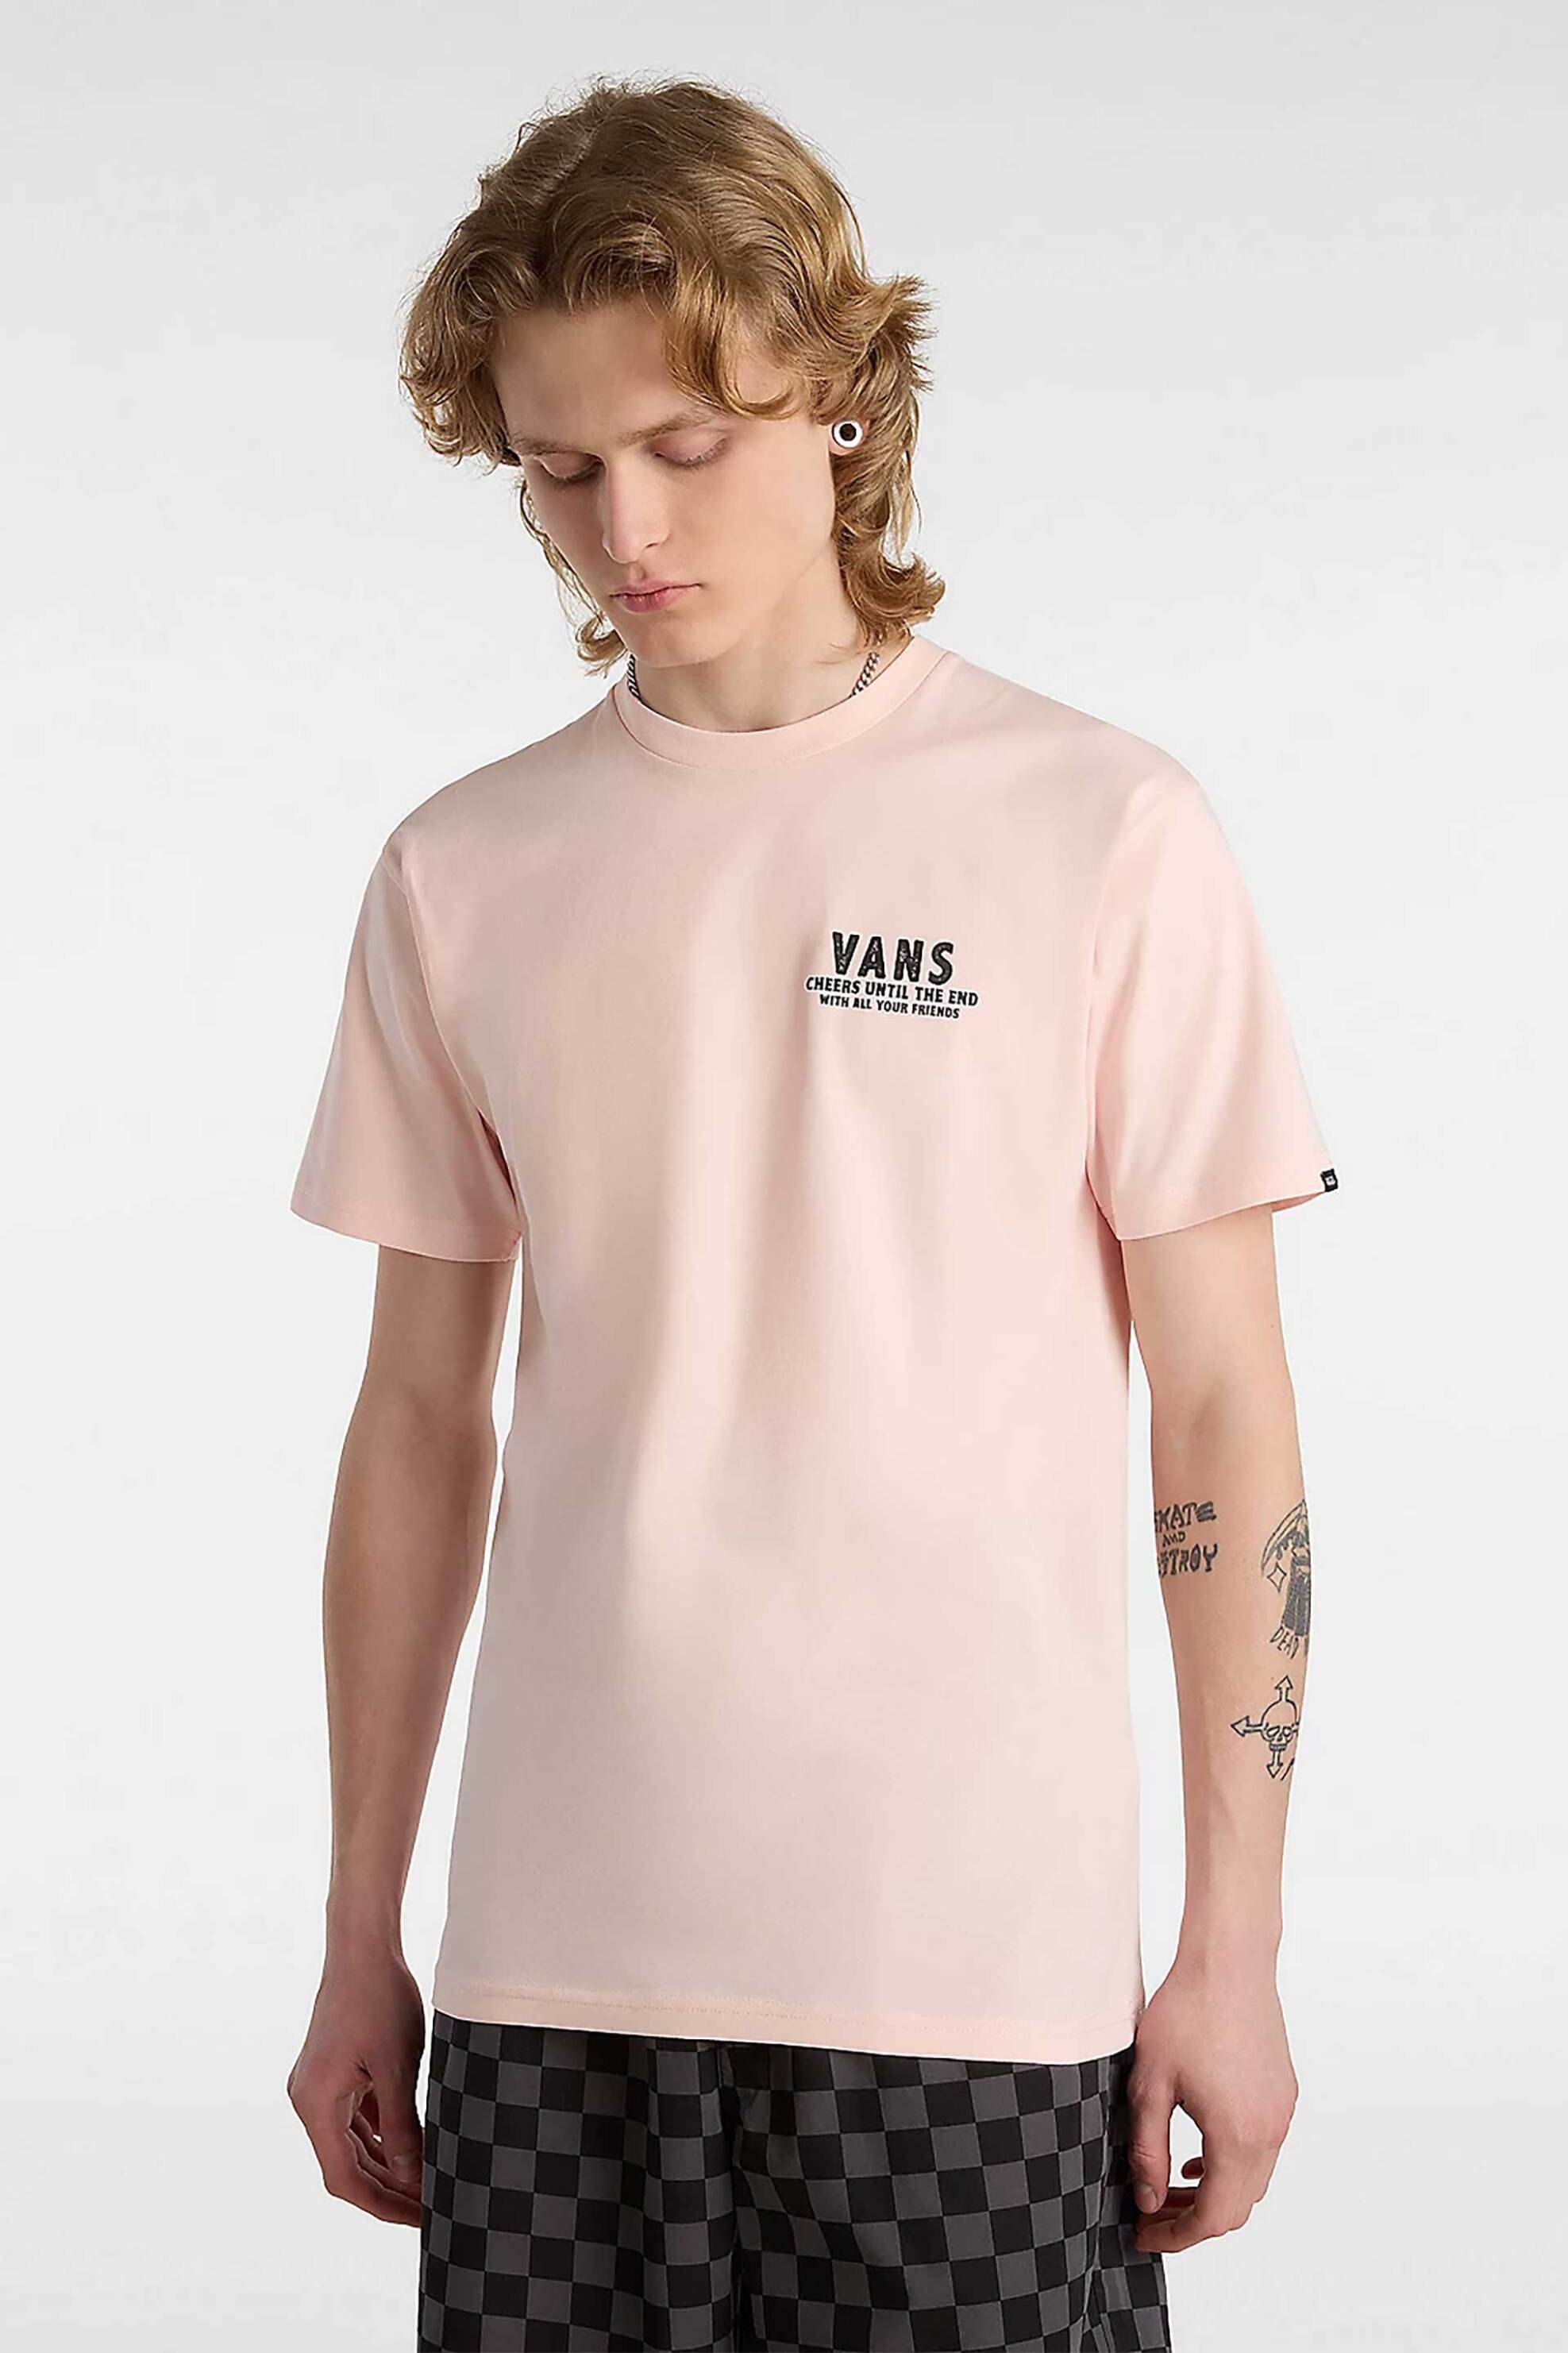 Ανδρική Μόδα > Ανδρικά Ρούχα > Ανδρικές Μπλούζες > Ανδρικά T-Shirts Vans ανδρικό T-shirt με print "Cold One Calling" - VN000KB9CHN1 Ροζ